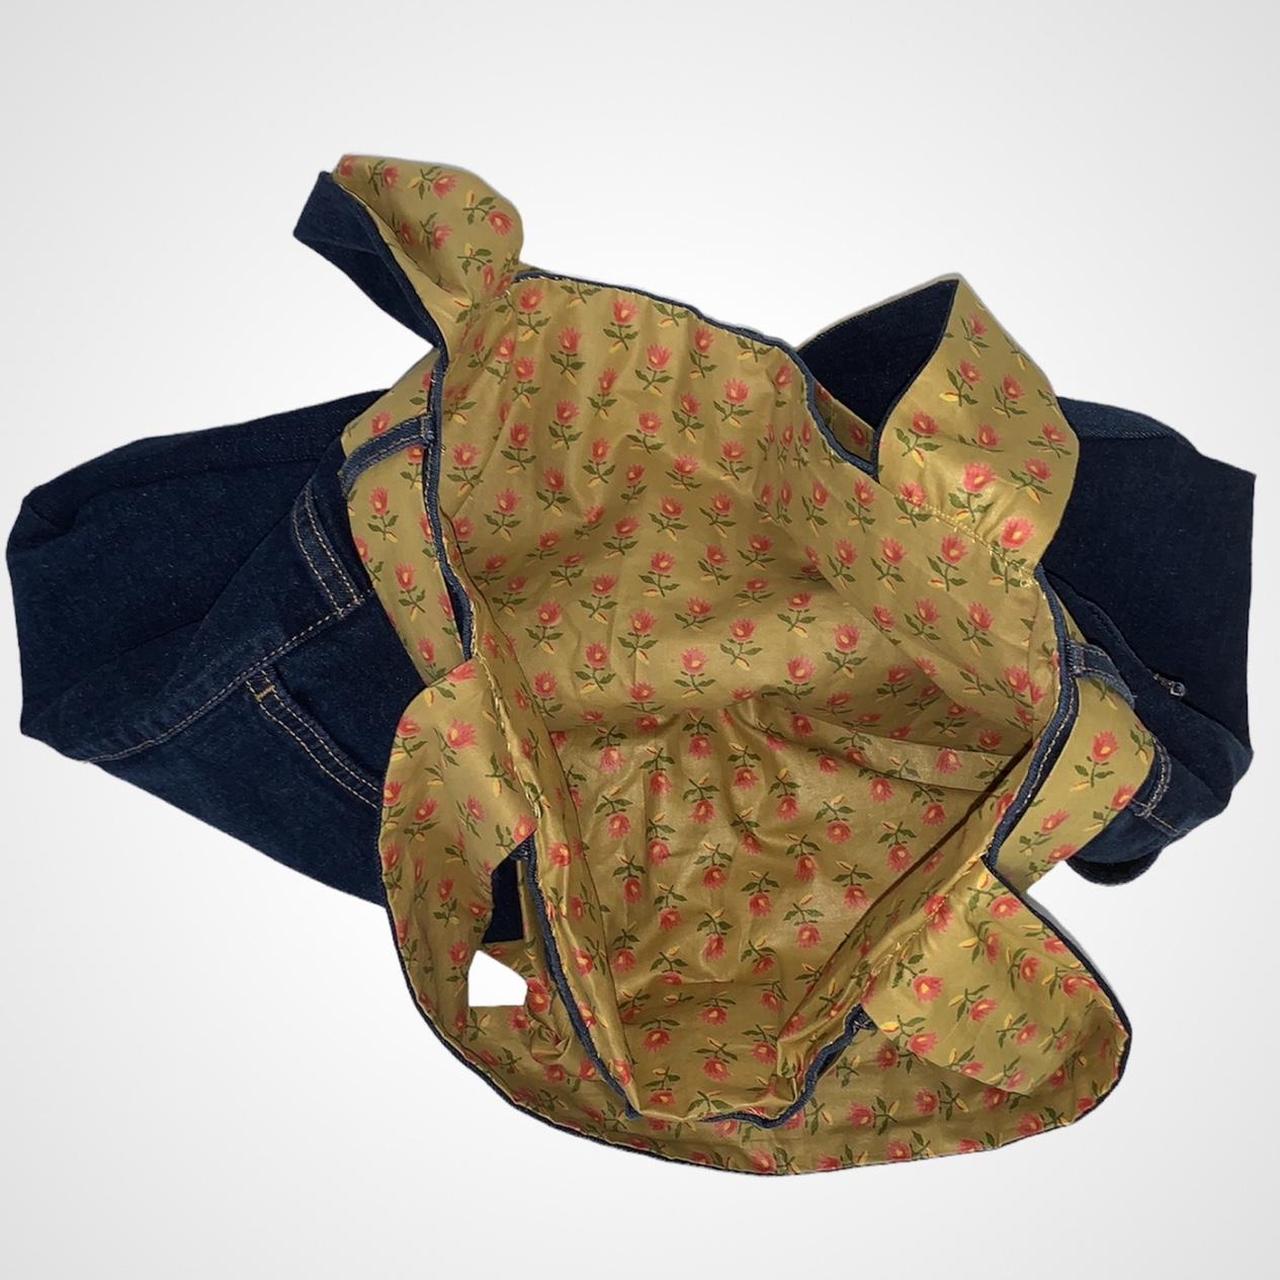 Custom Reworked denim vintage y2k jeans bag with floral lining and tie